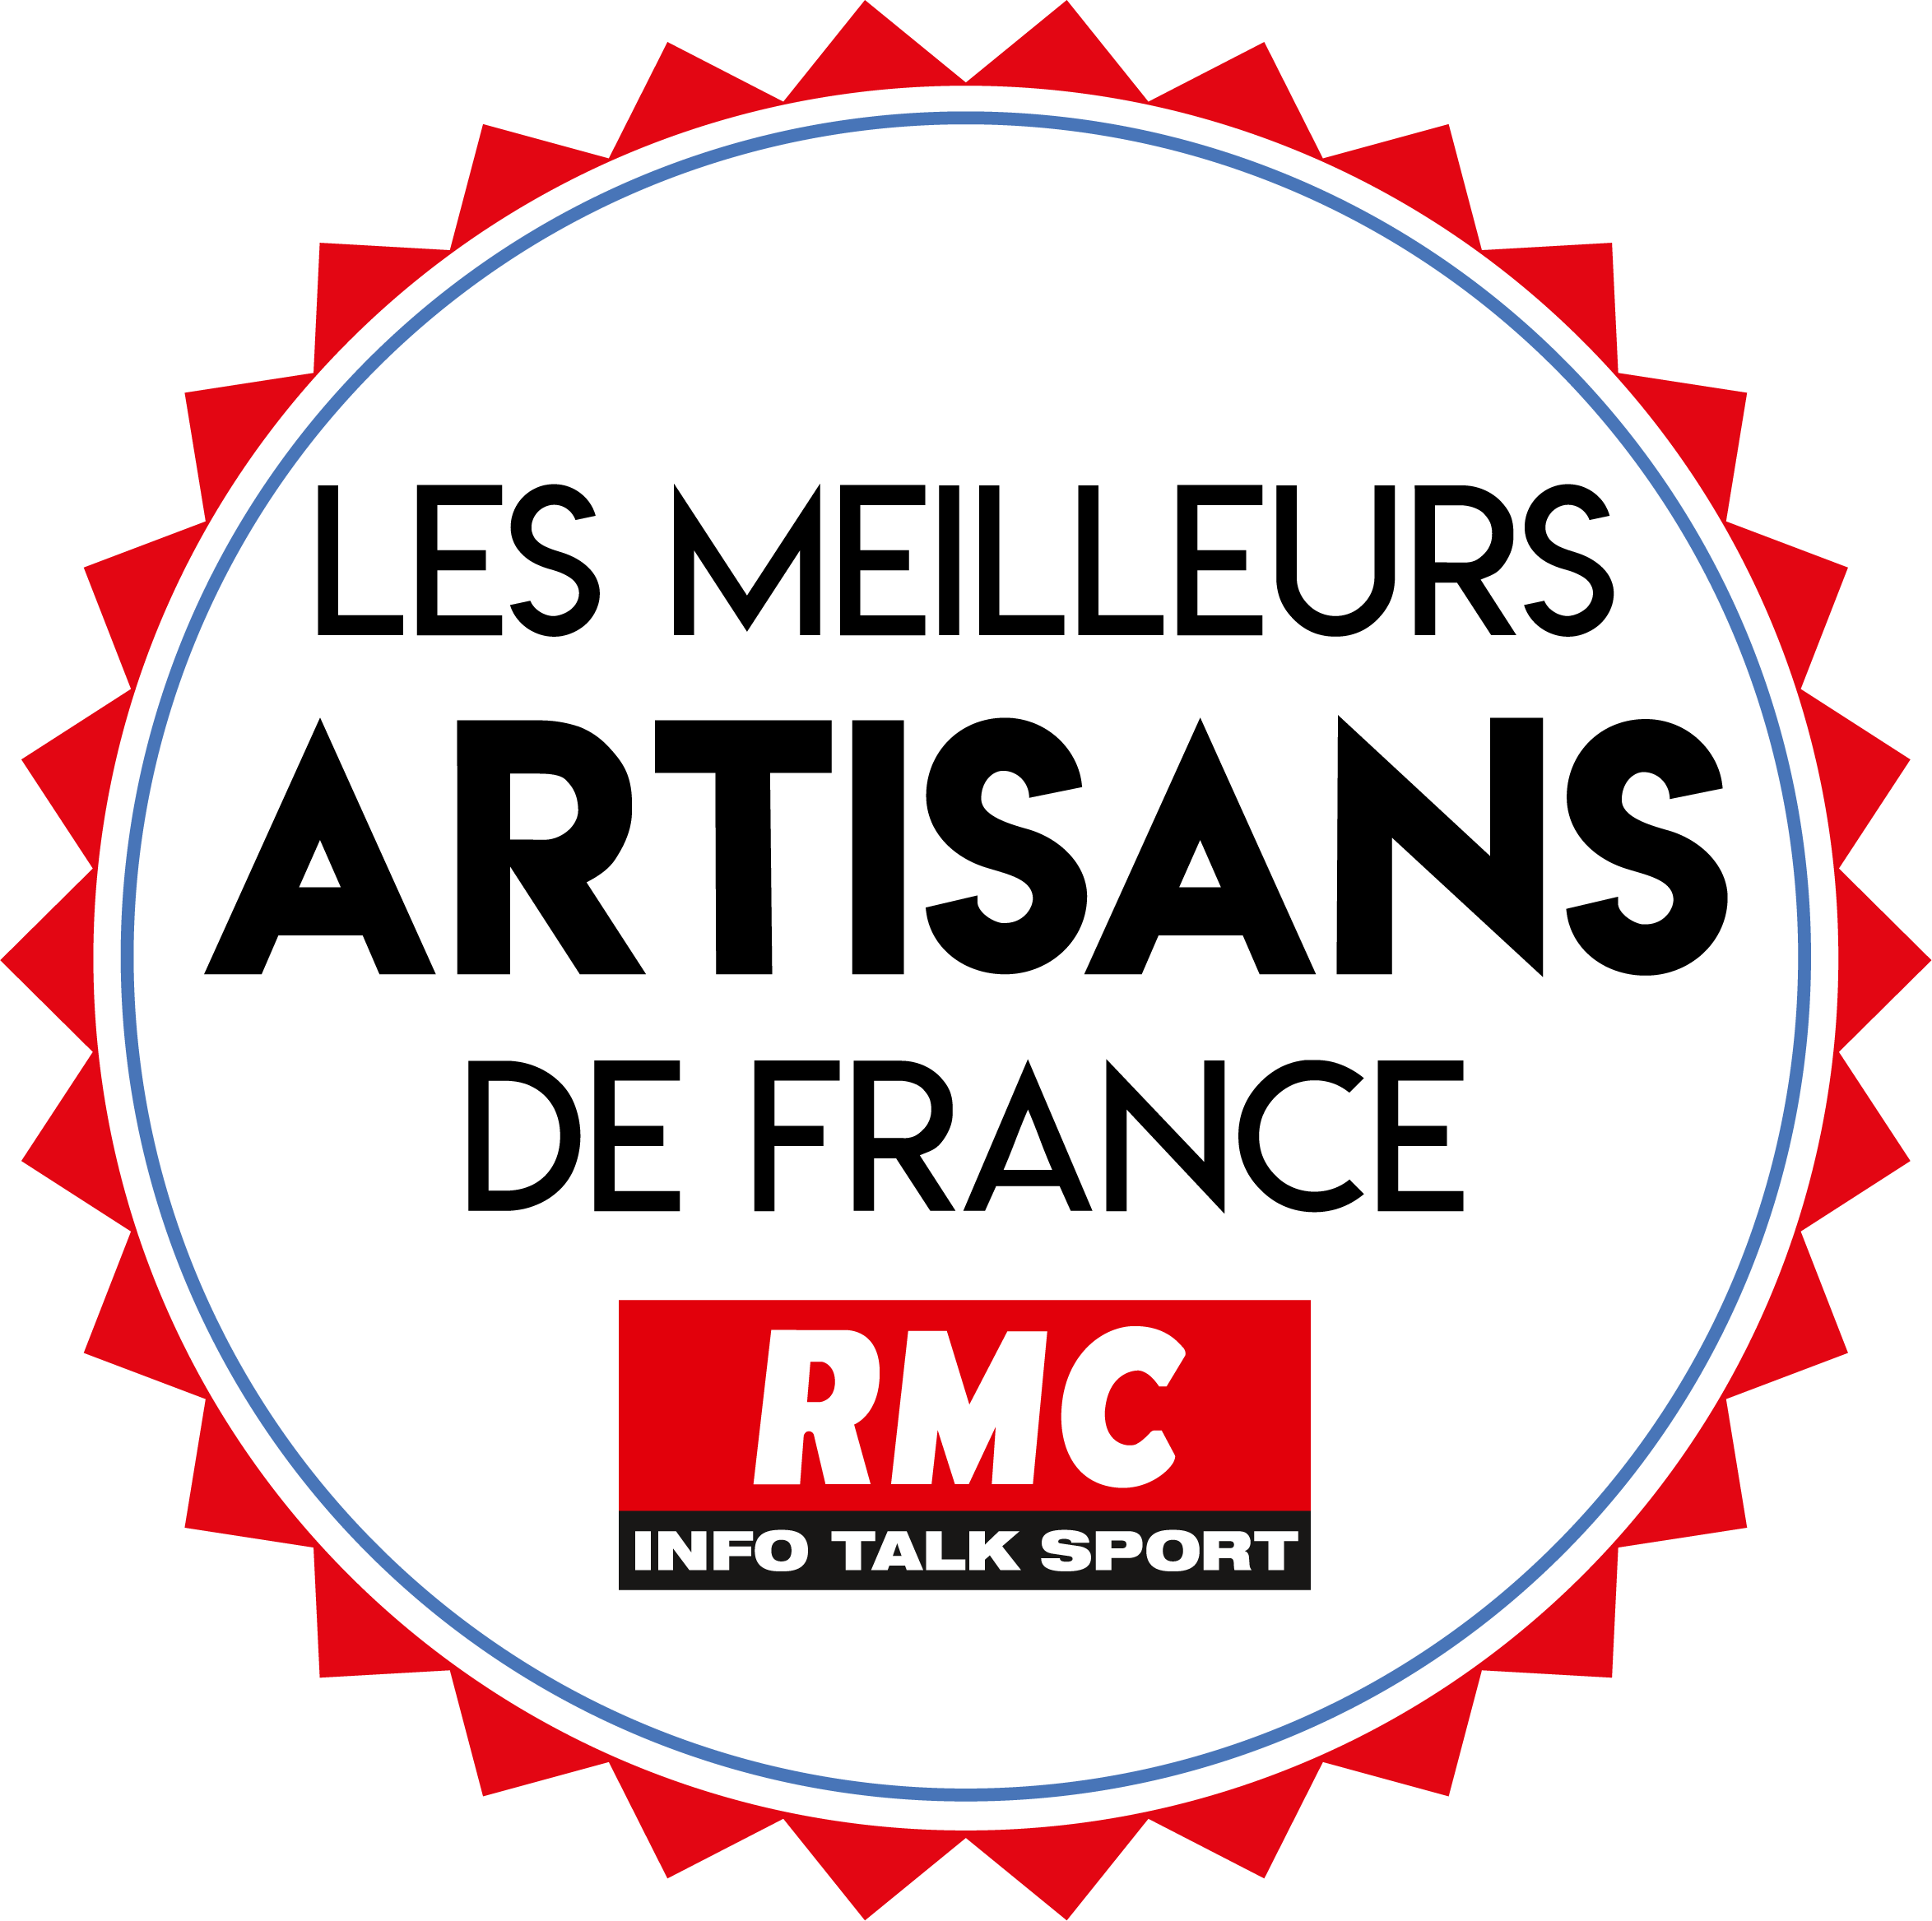 Logotype du meilleur artisan de France sur BFMTV